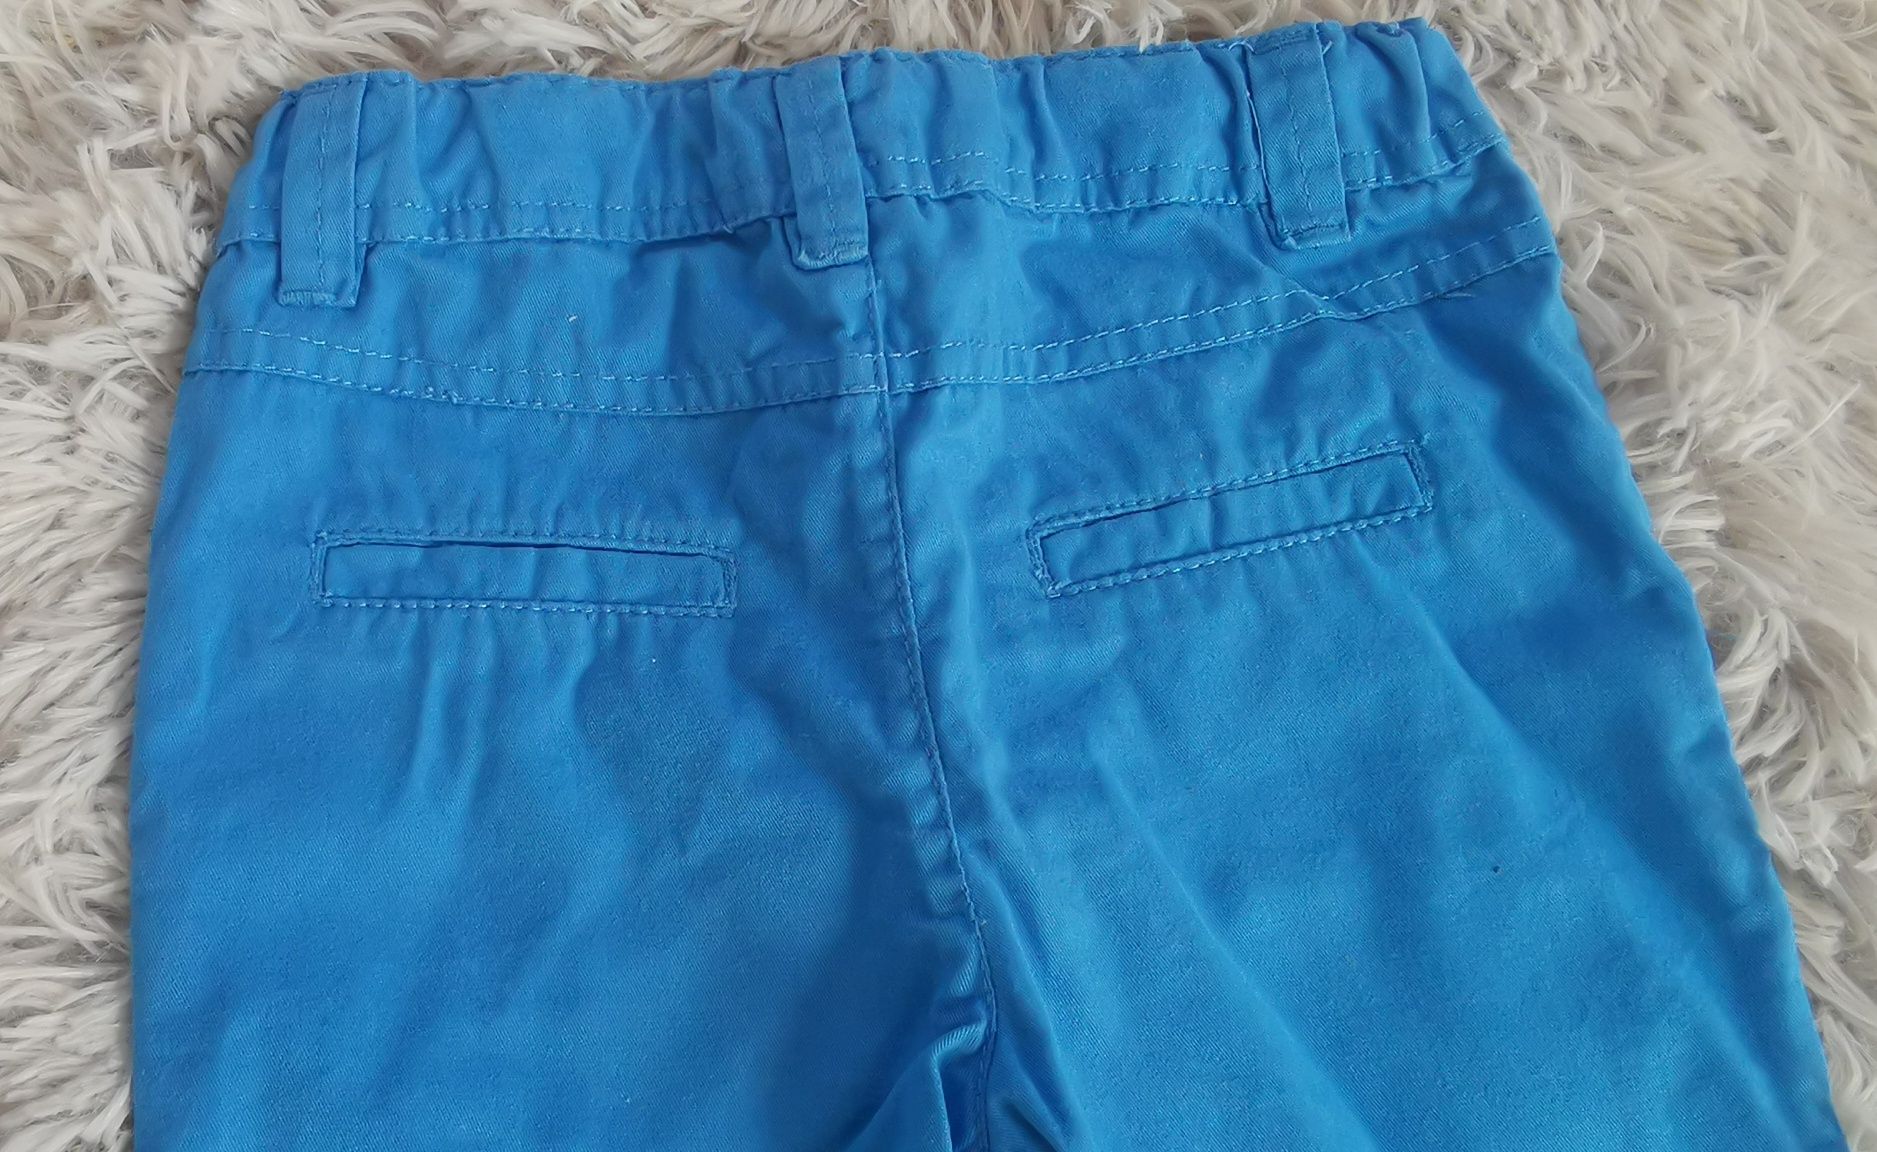 Dwie pary niebieskich spodni cool club w rozmiarze 68. Bliźniaki